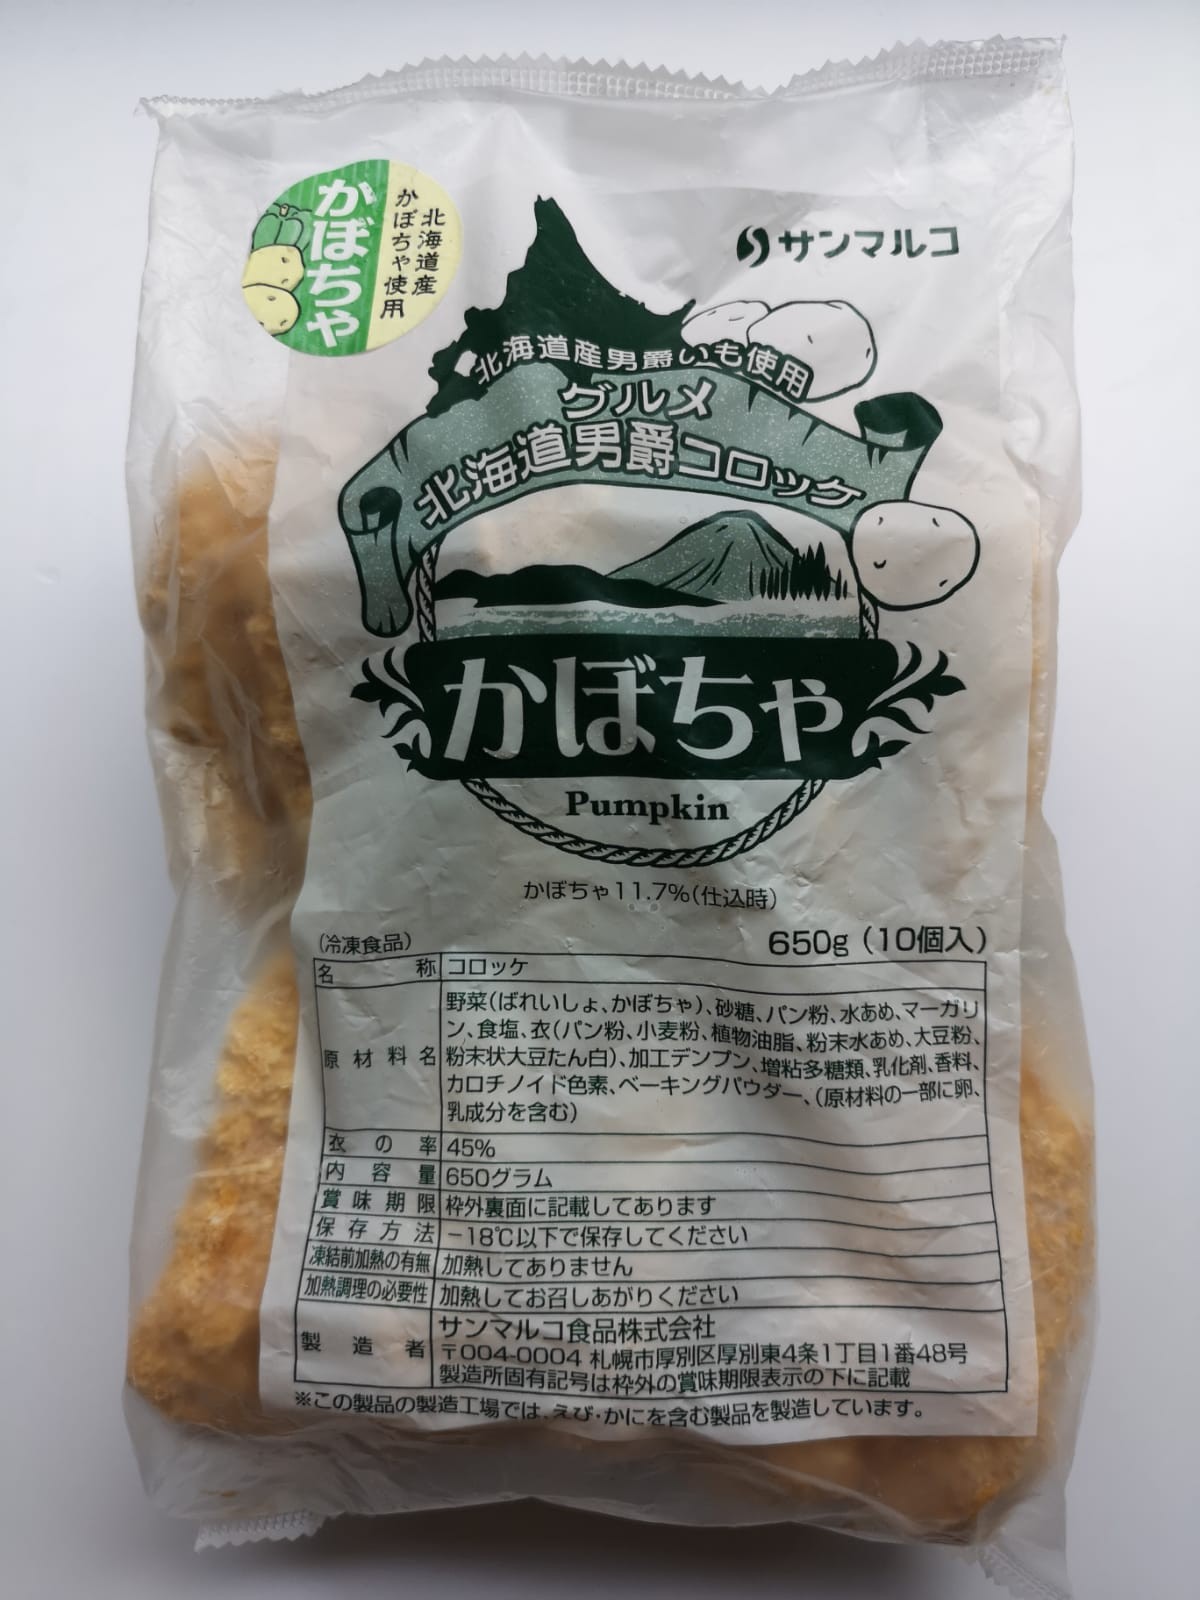 日本南爵薯餅,650g(內10個裝) 適合煎,焗或氣炸爐等